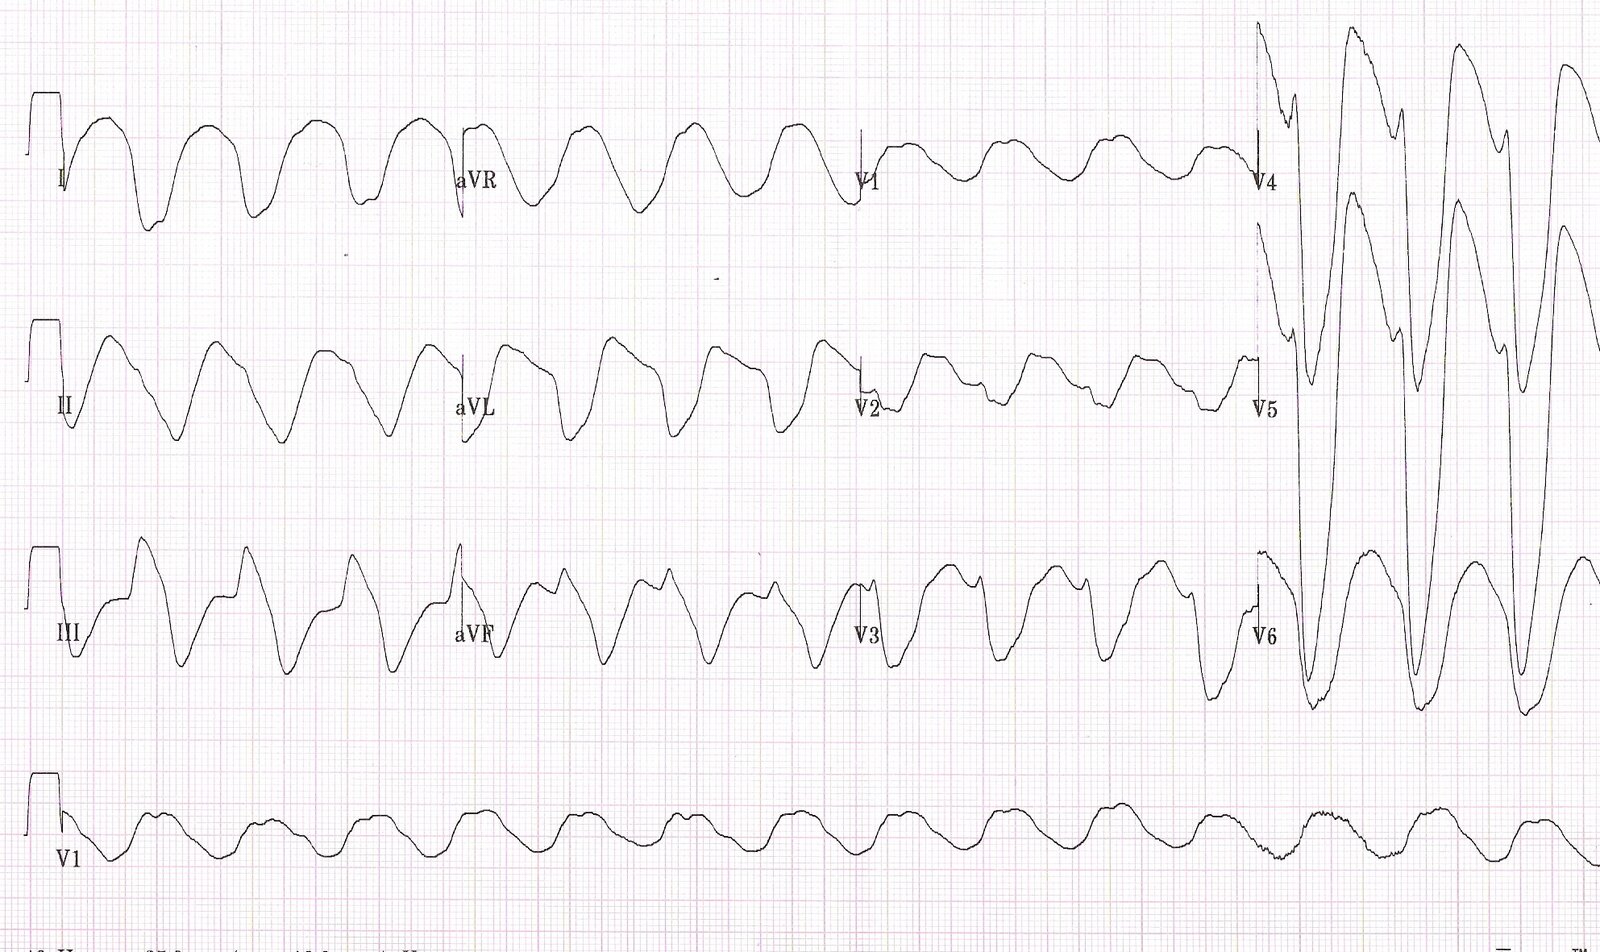 Hyperkalaemia ECG showing a sine wave morphology